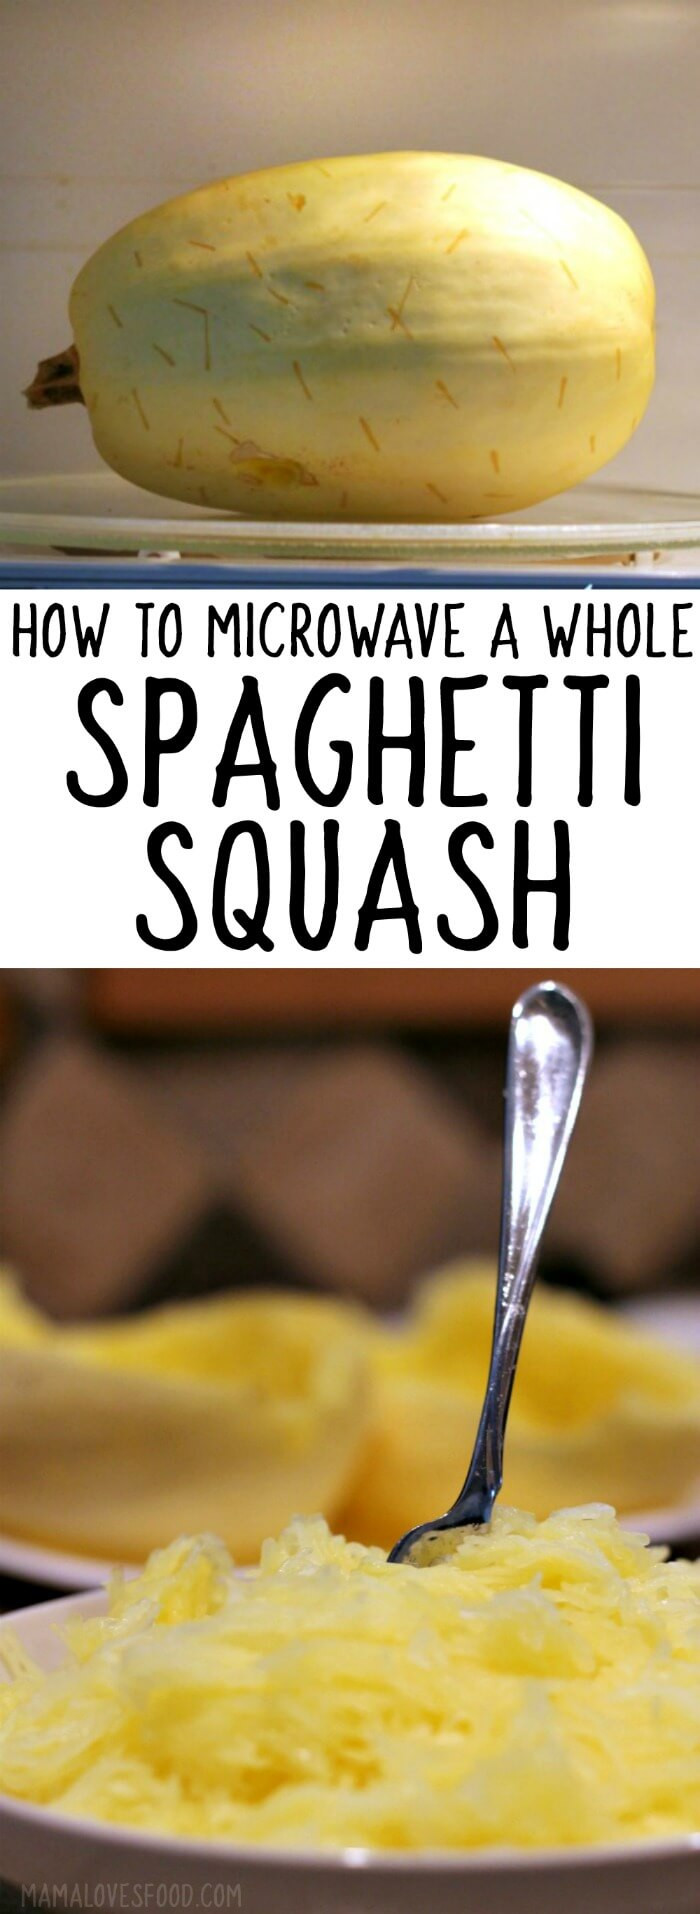 Spaghetti Squash Microwave Whole
 How to Microwave Spaghetti Squash Mama Loves Food